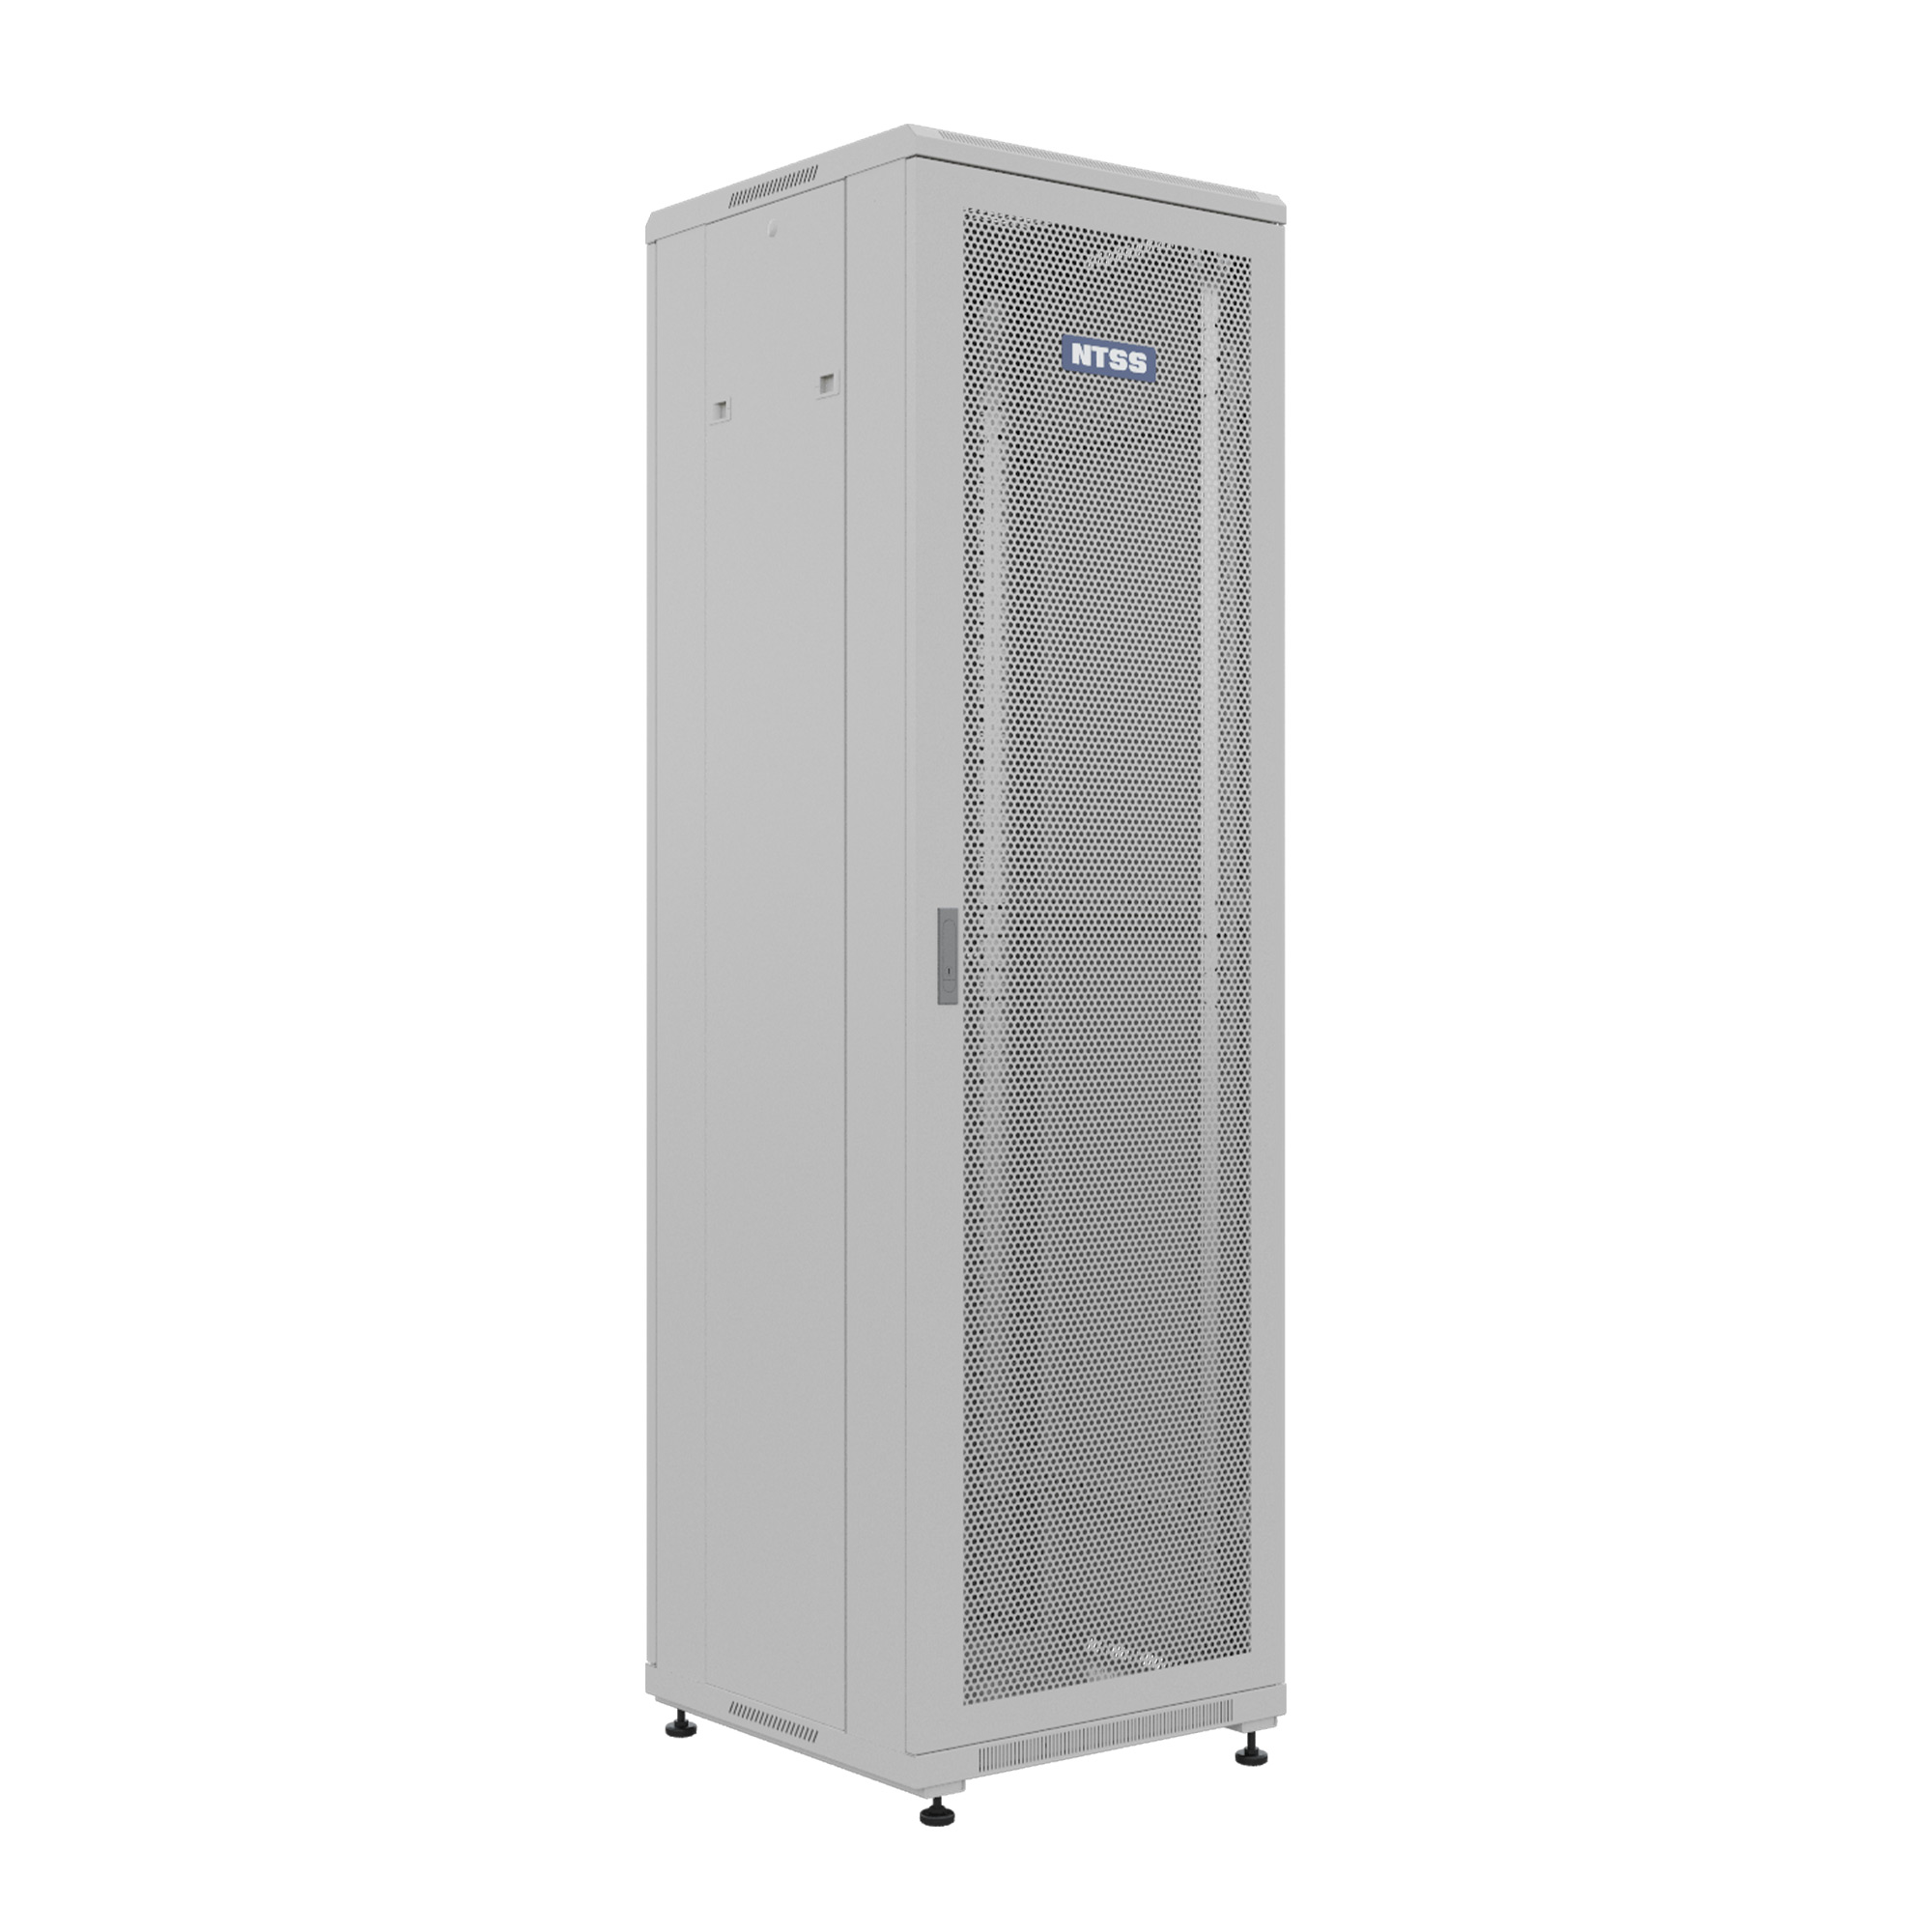 Шкаф напольный универсальный серверный NTSS R 32U 600х600мм, 4 профиля 19, двери перфорированная и сплошная металл, боковые стенки съемные, регулируемые опоры, разобранный, серый RAL 7035